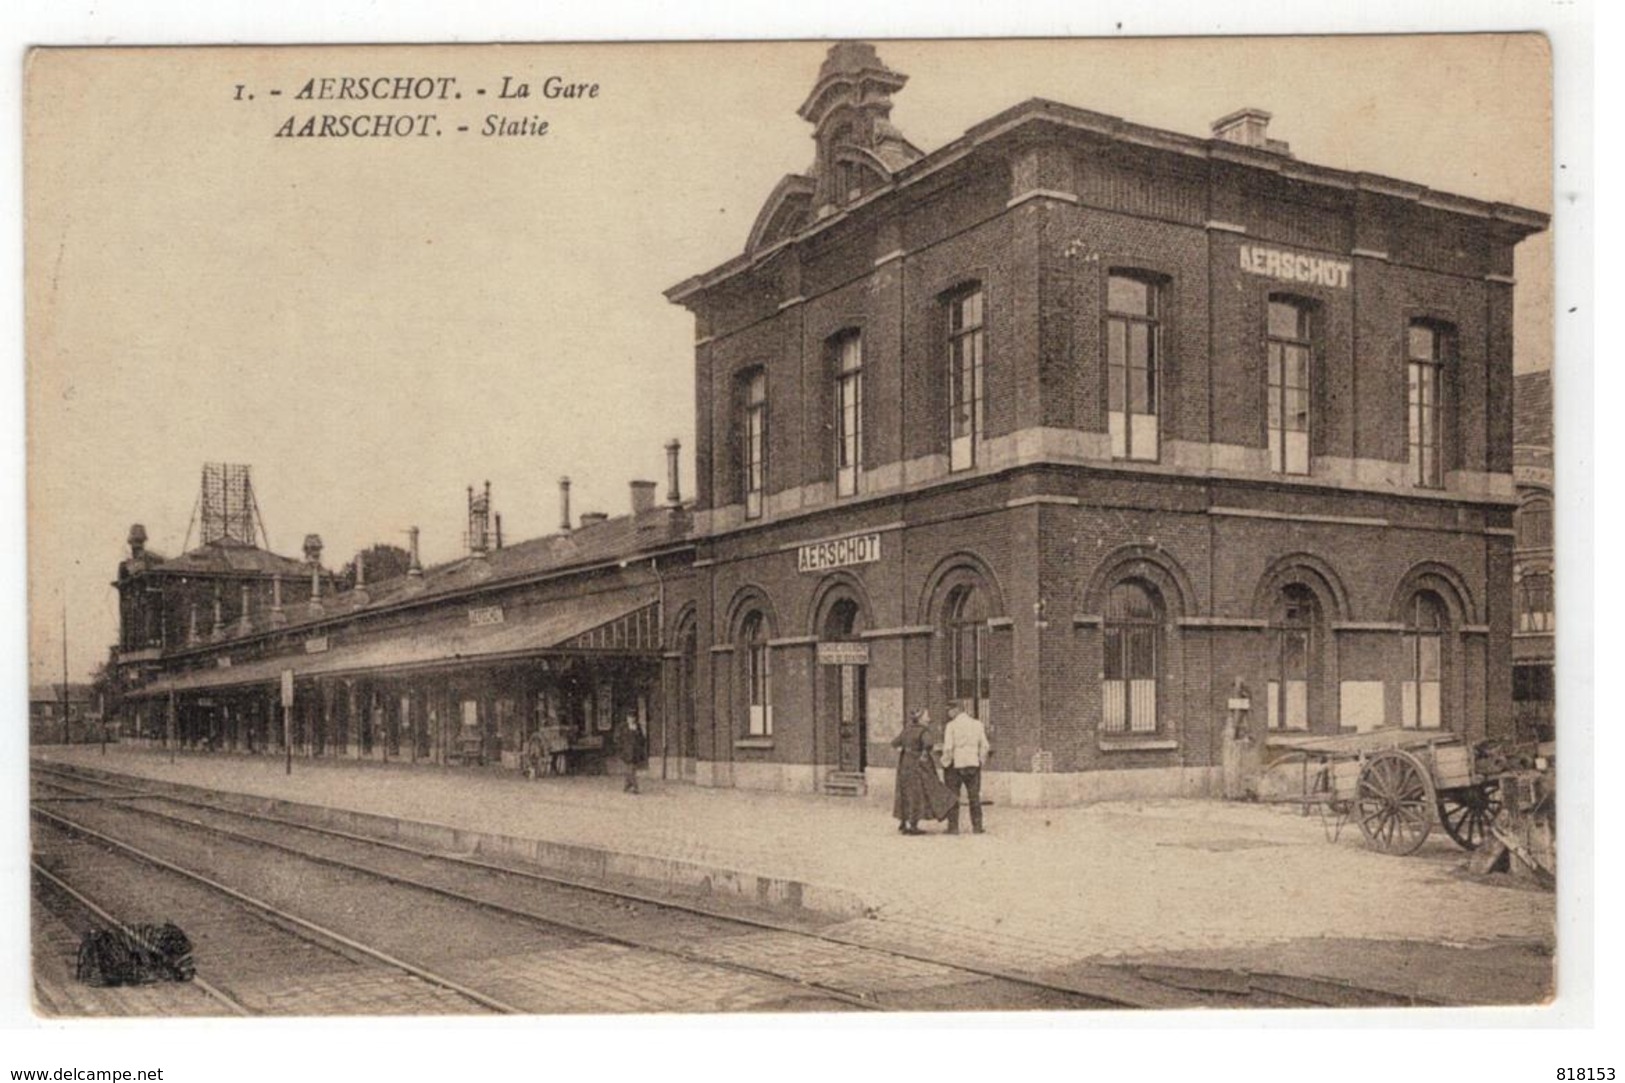 1. AARSCHOT - Statie  AERSCHOT  - La Gare  Henri Georges, éditeur,Bruxelles - Aarschot